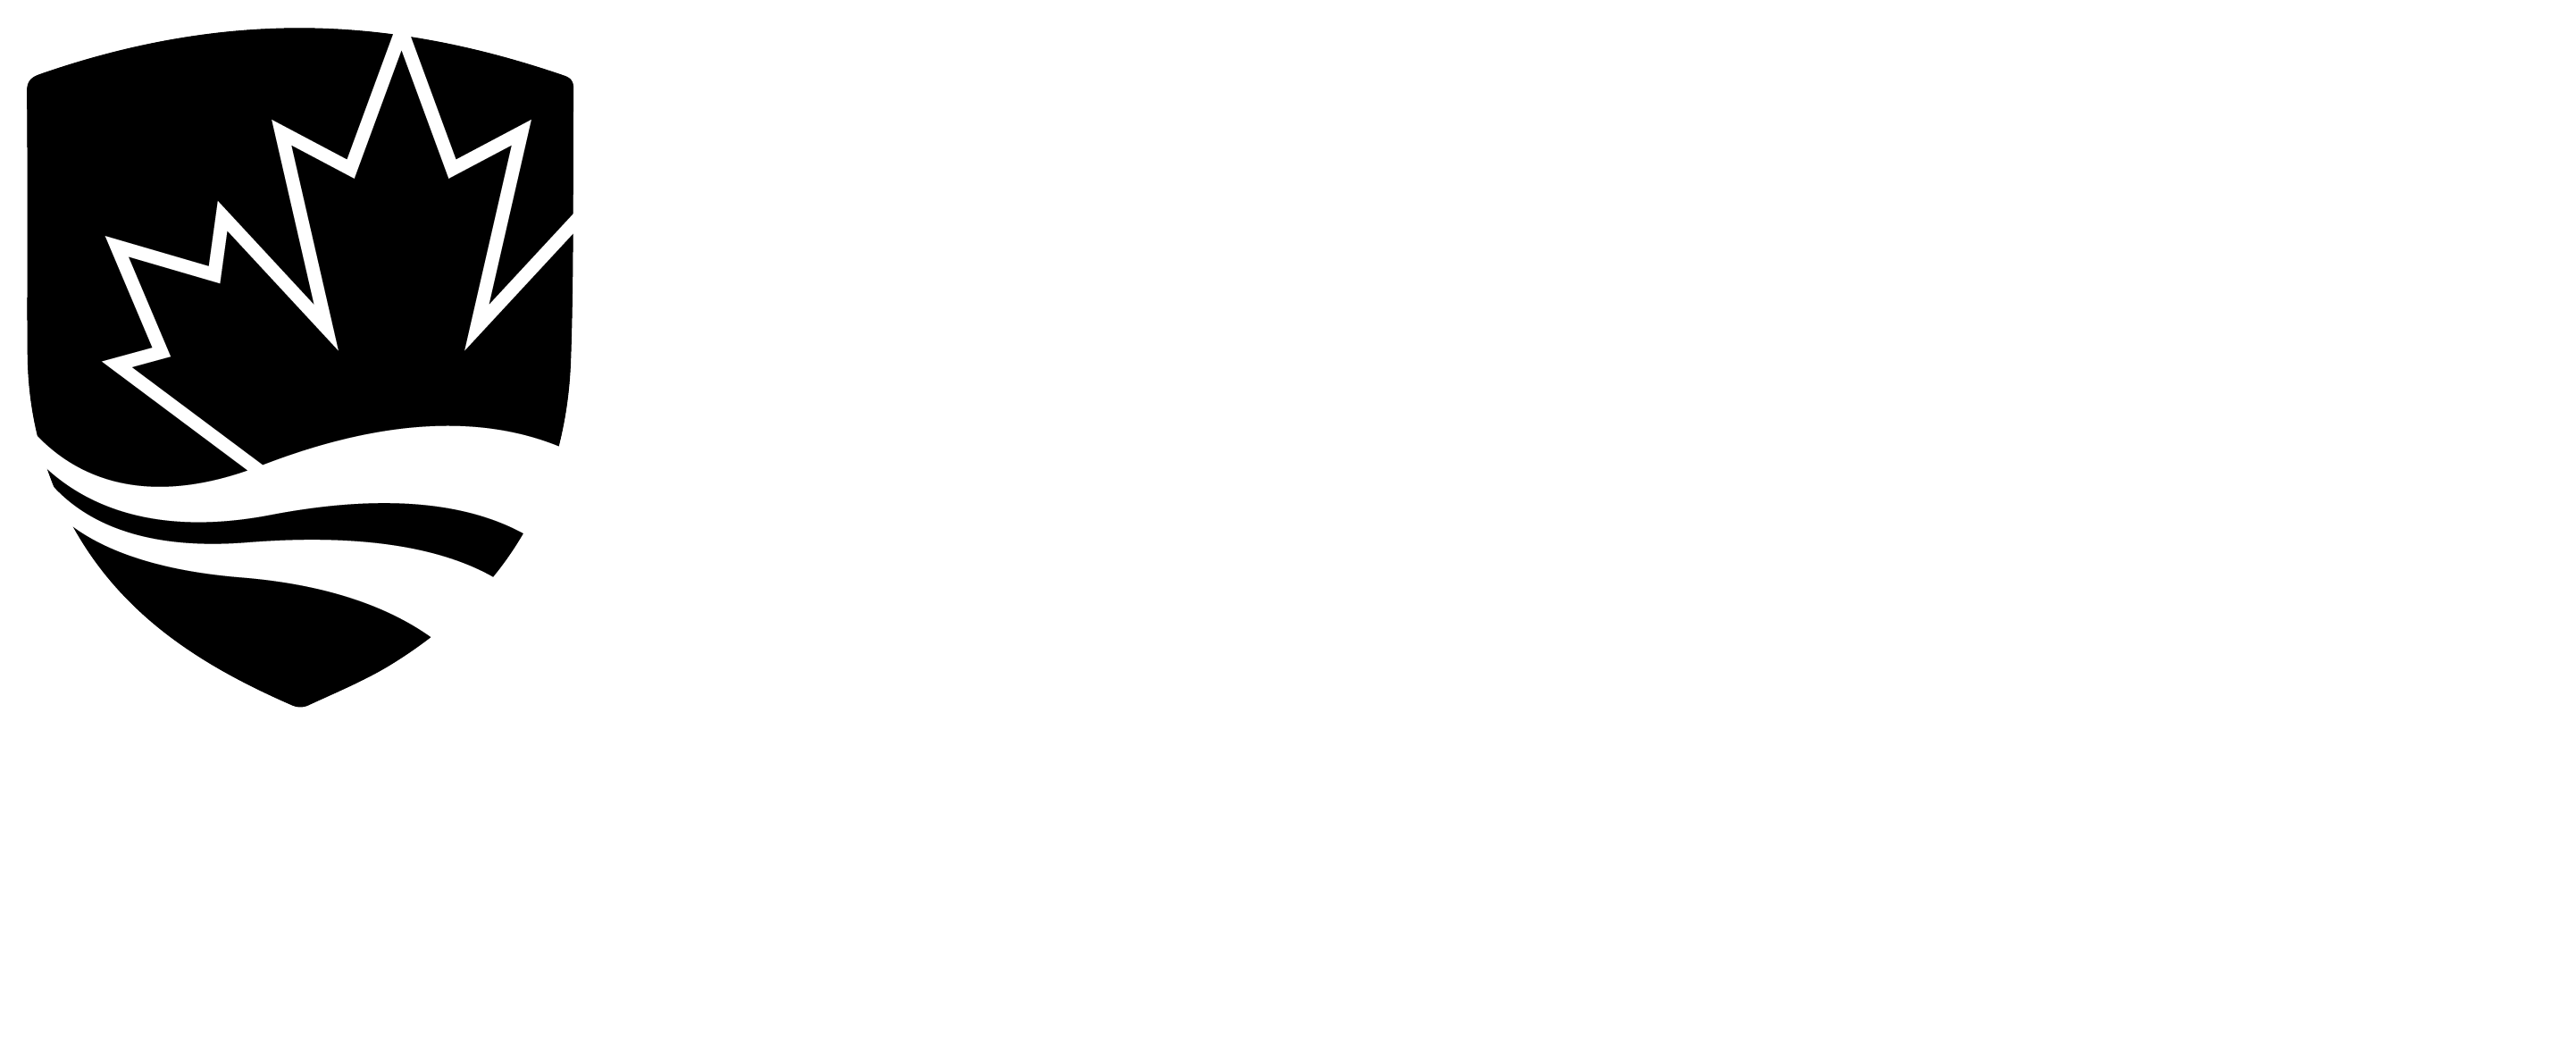 Carleton University Journalism